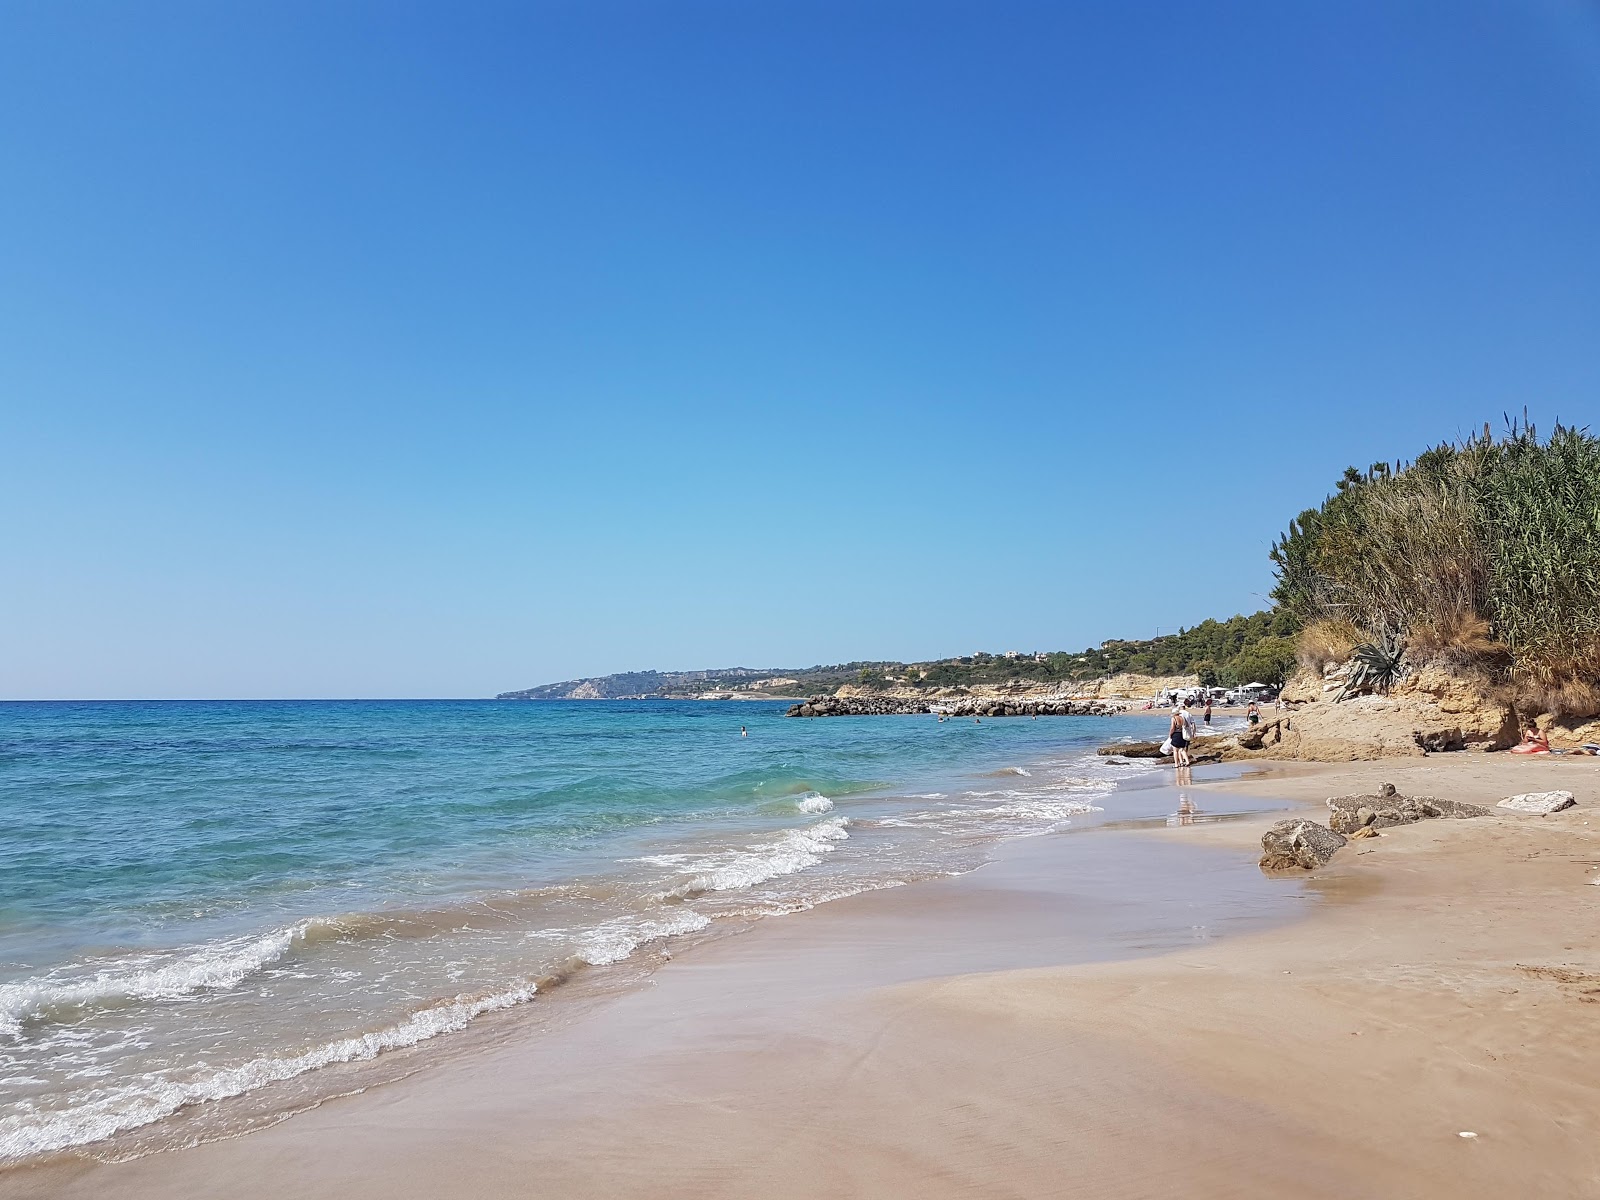 Foto af Kanali beach - populært sted blandt afslapningskendere